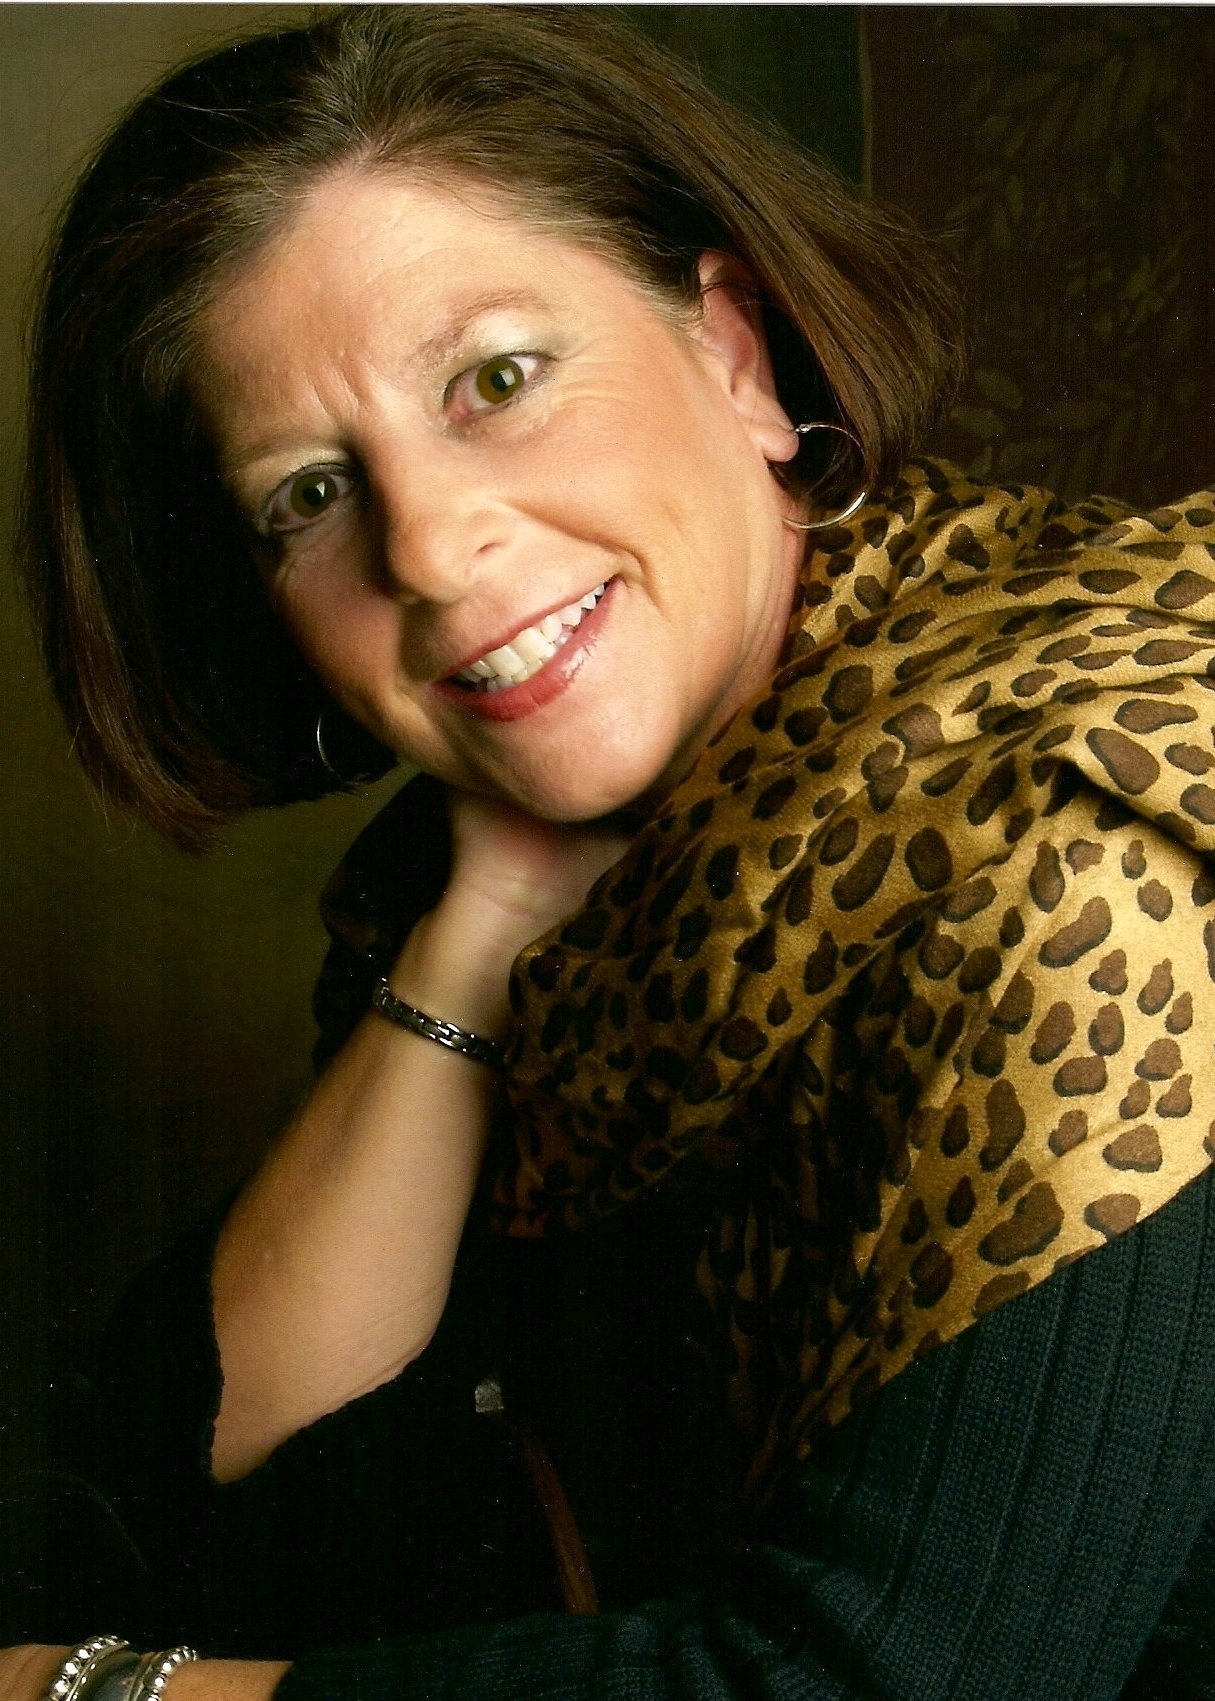 Patti Biro, Developing a Personal Education Plan, MASSAGE Magazine